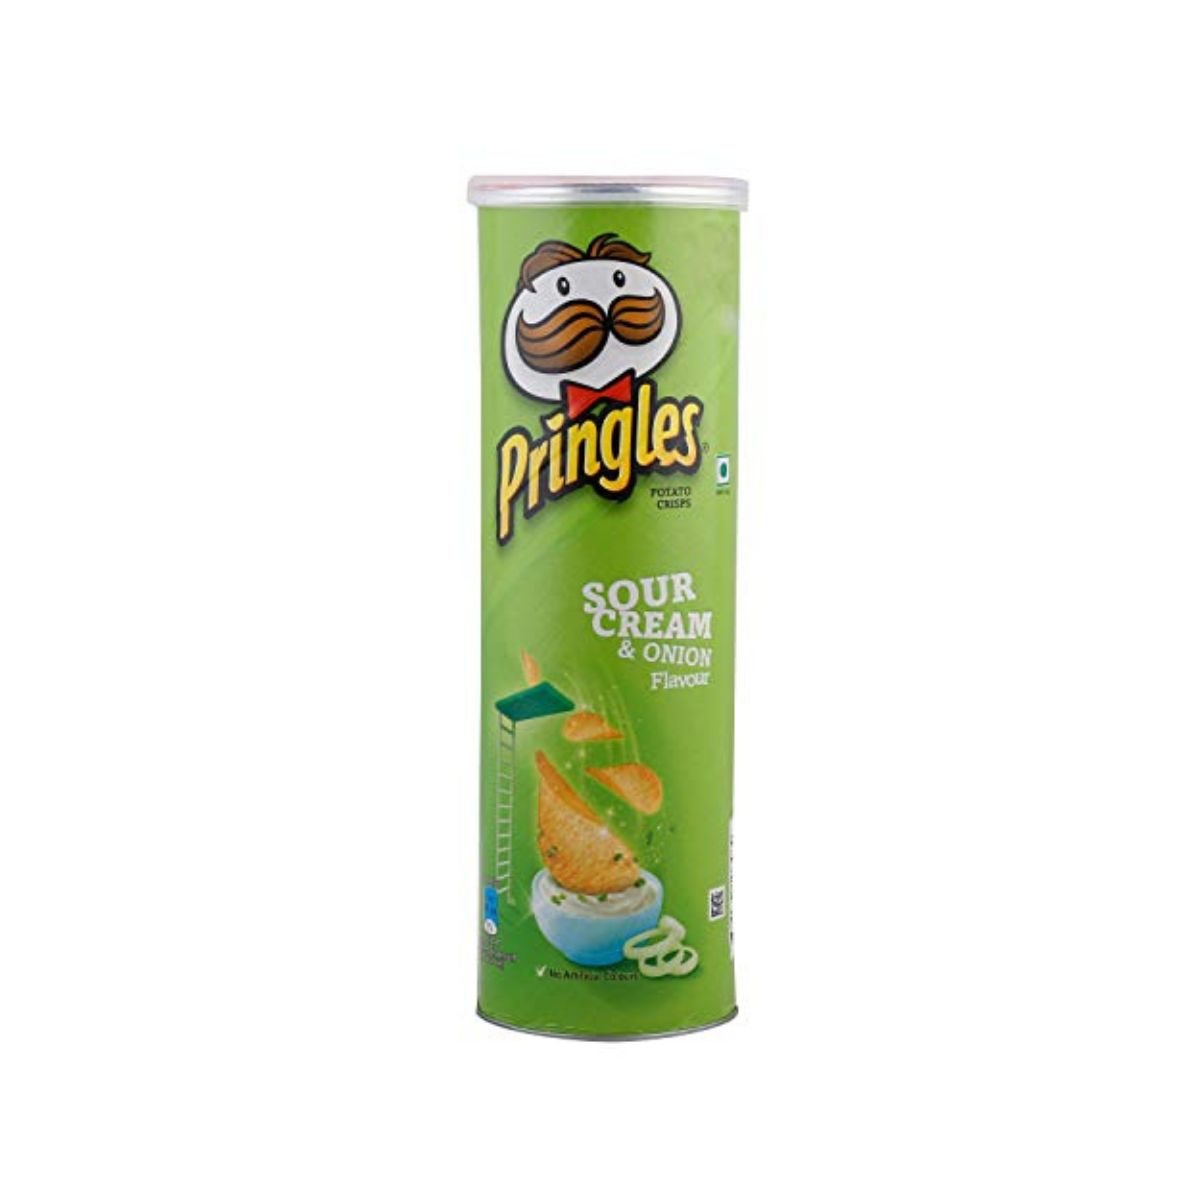 Pringles - Sour Cream & Onion - 107g